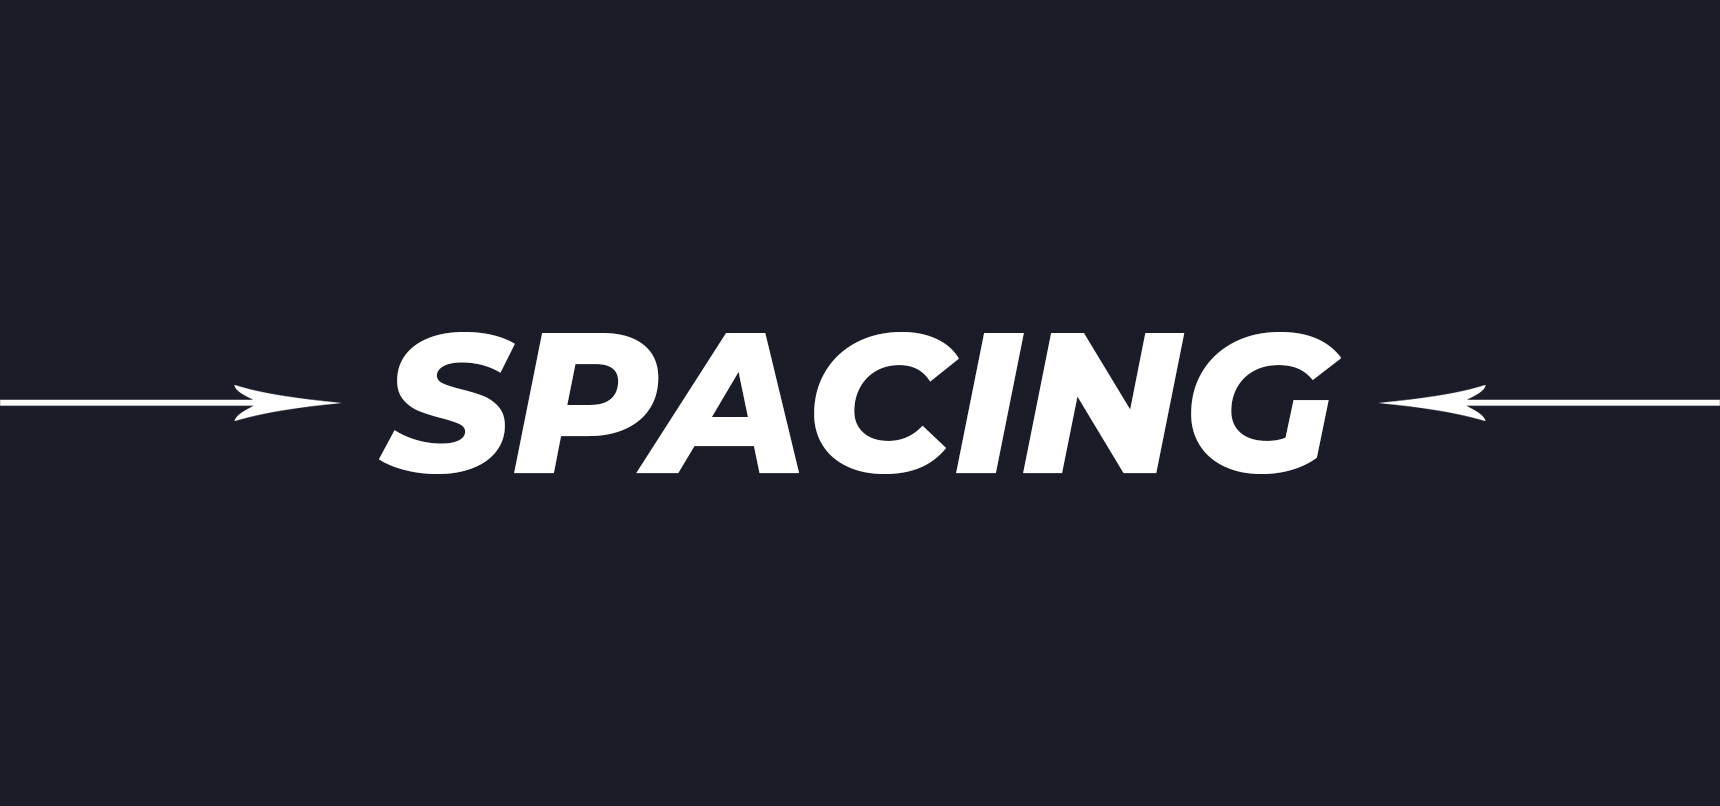 Tìm hiểu chi tiết về Spacing trong CSS